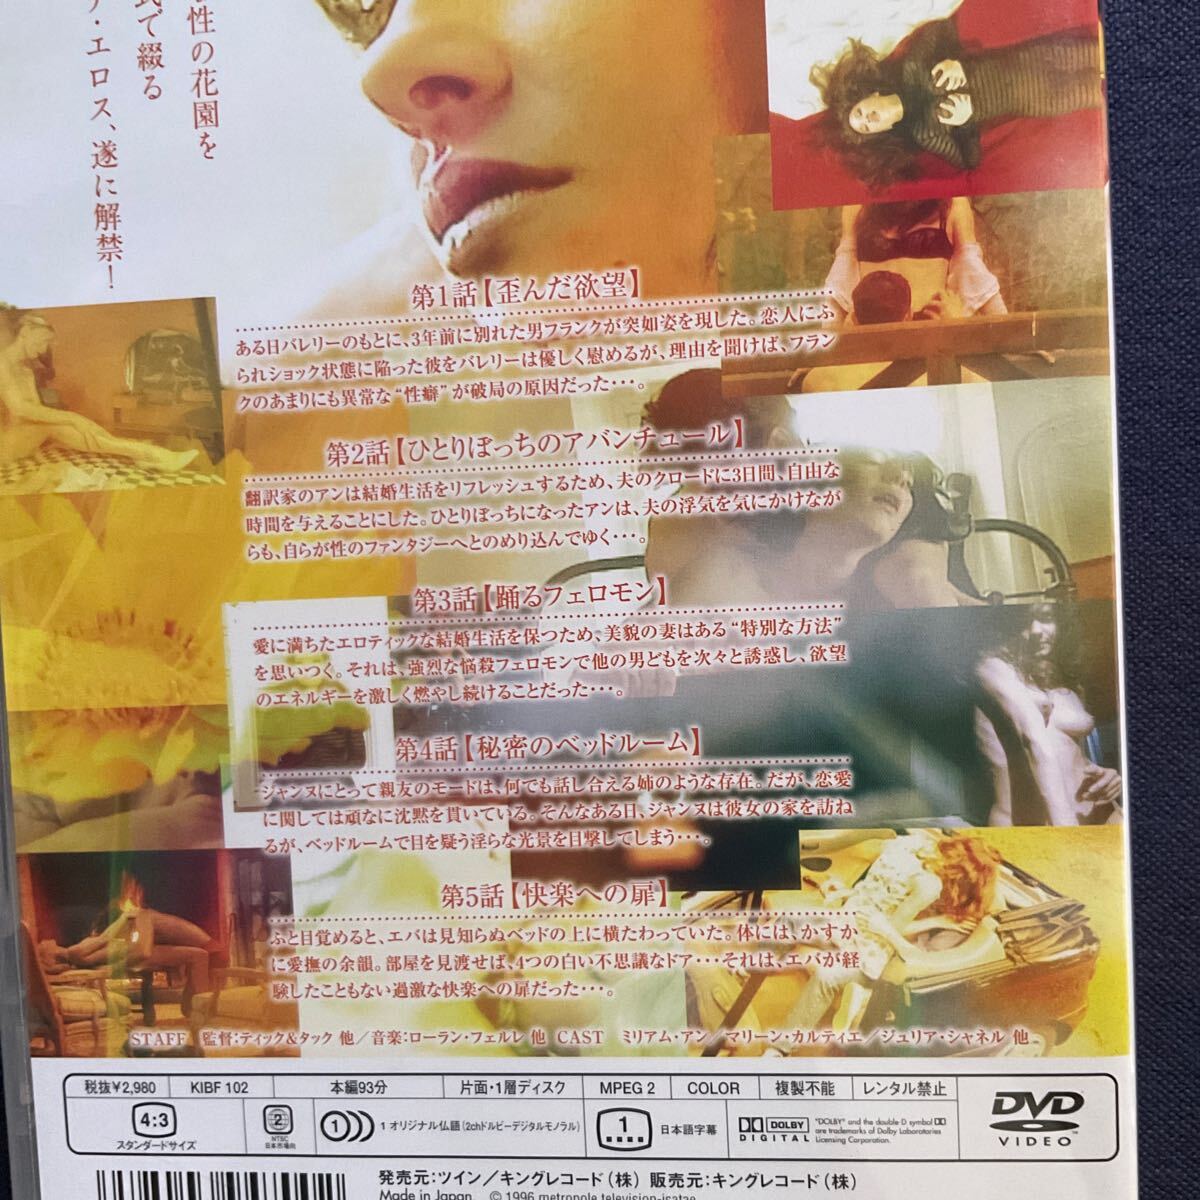 【セル】DVD『ノクターン〜快楽への扉〜』第1話『歪んだ欲望』第2話『ひとりぼっちのアバンチュール』他の画像3